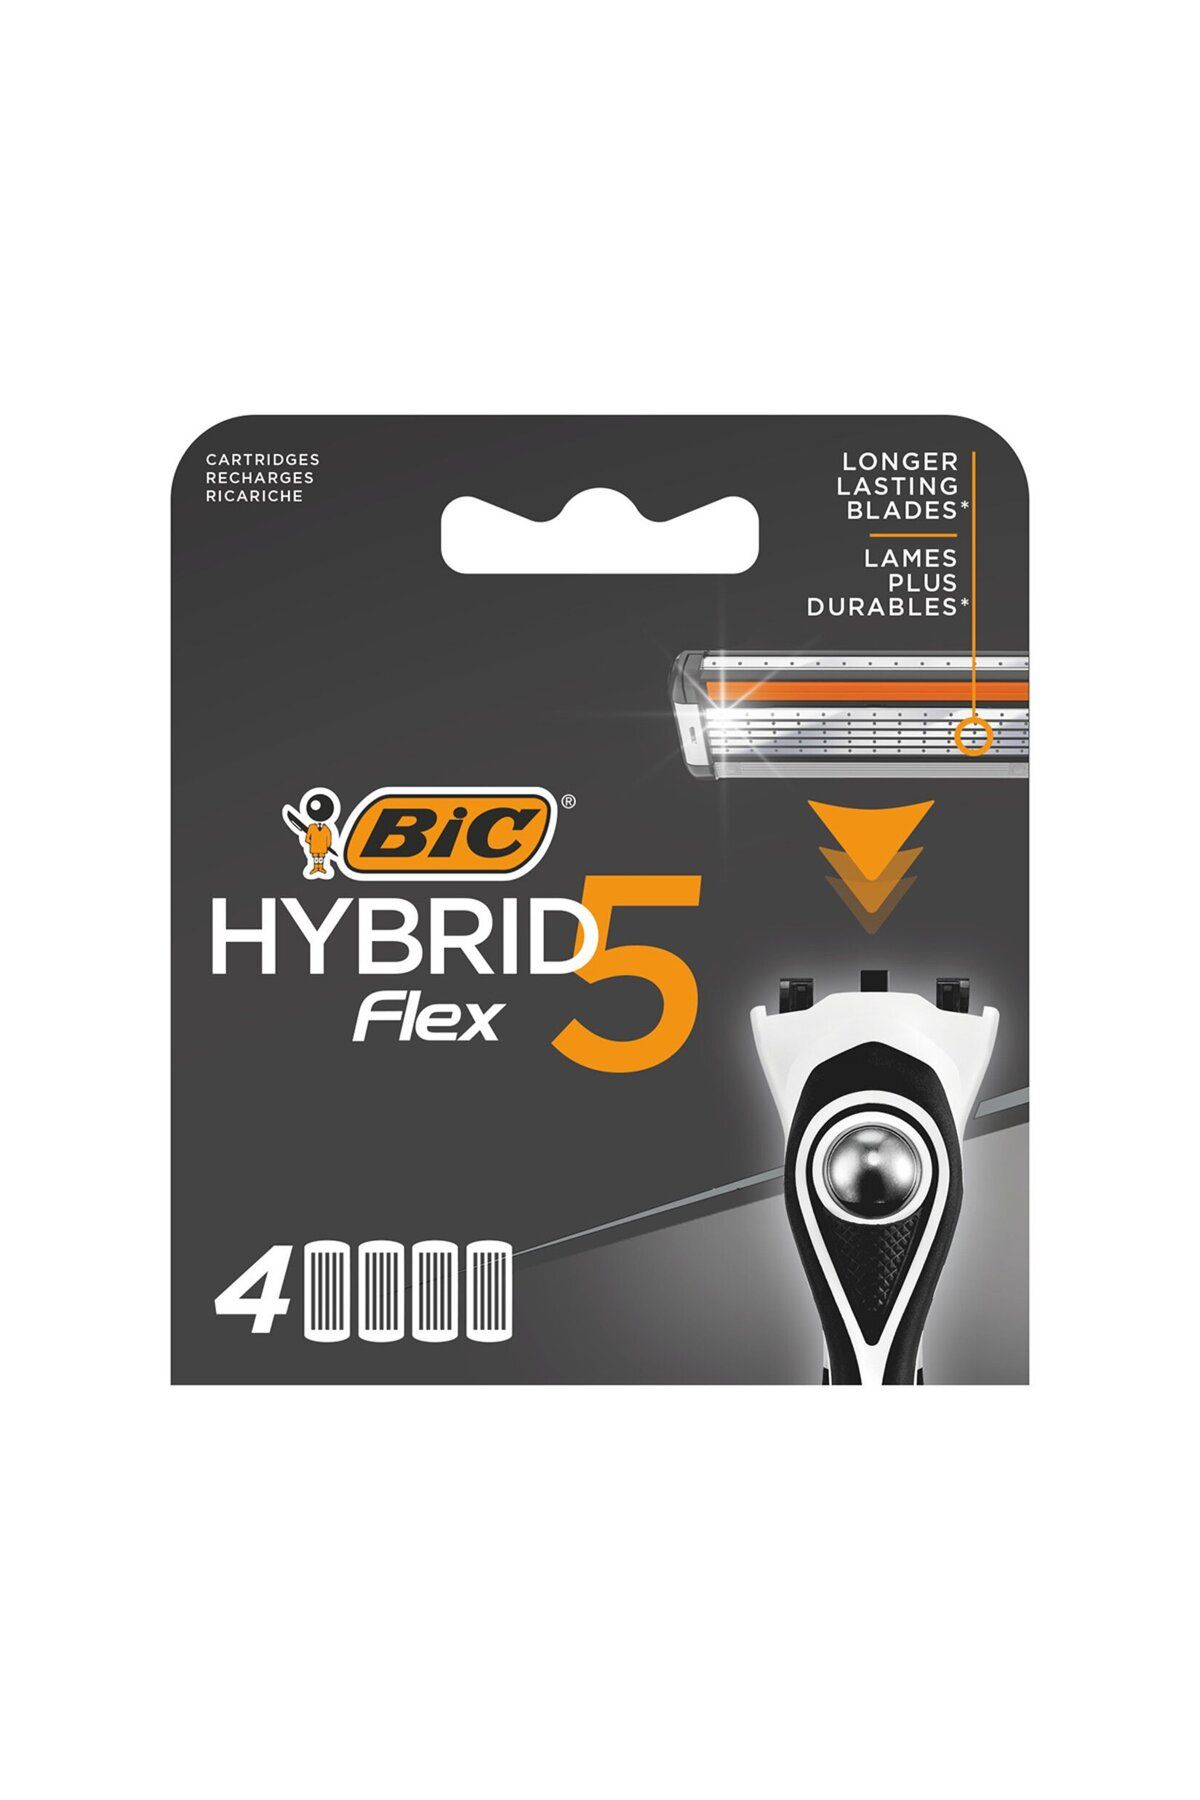 Bic Hybrid 5 Flex Tıraş Bıçağı Yedek Kartuşu 4'lü